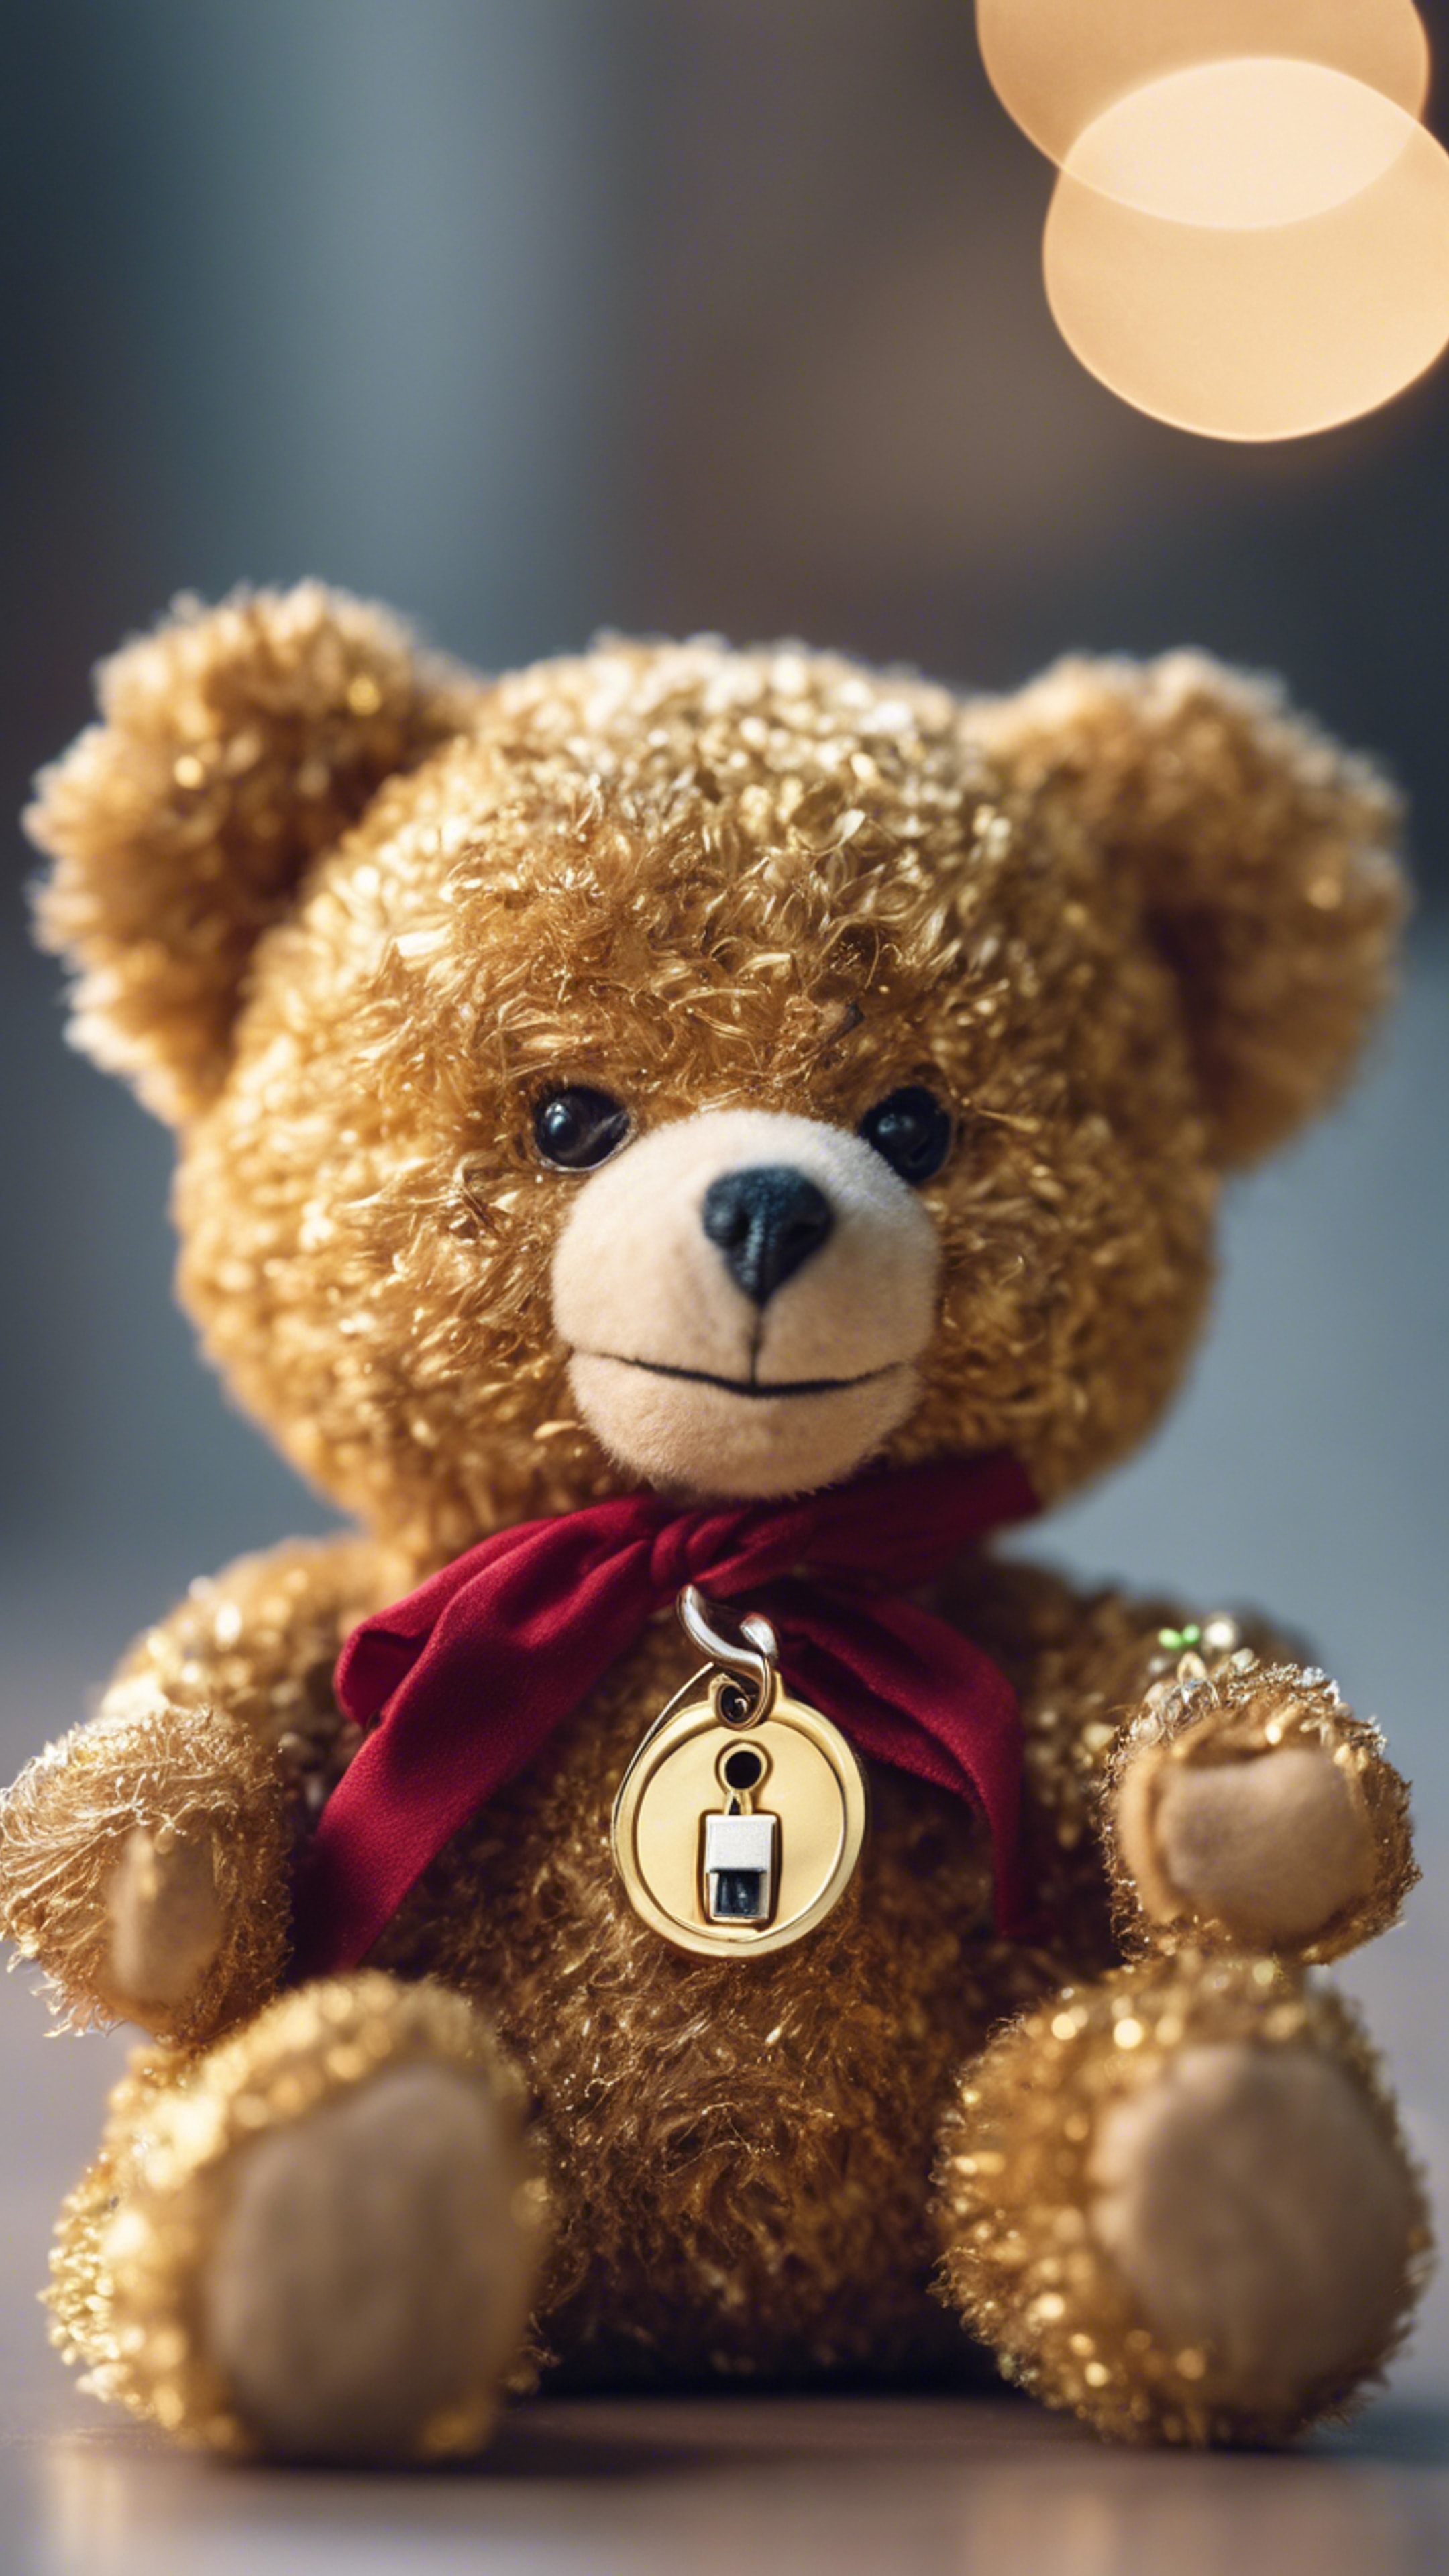 A teddy bear holding a shiny golden key.壁紙[5d2fb50236af4c678fb0]